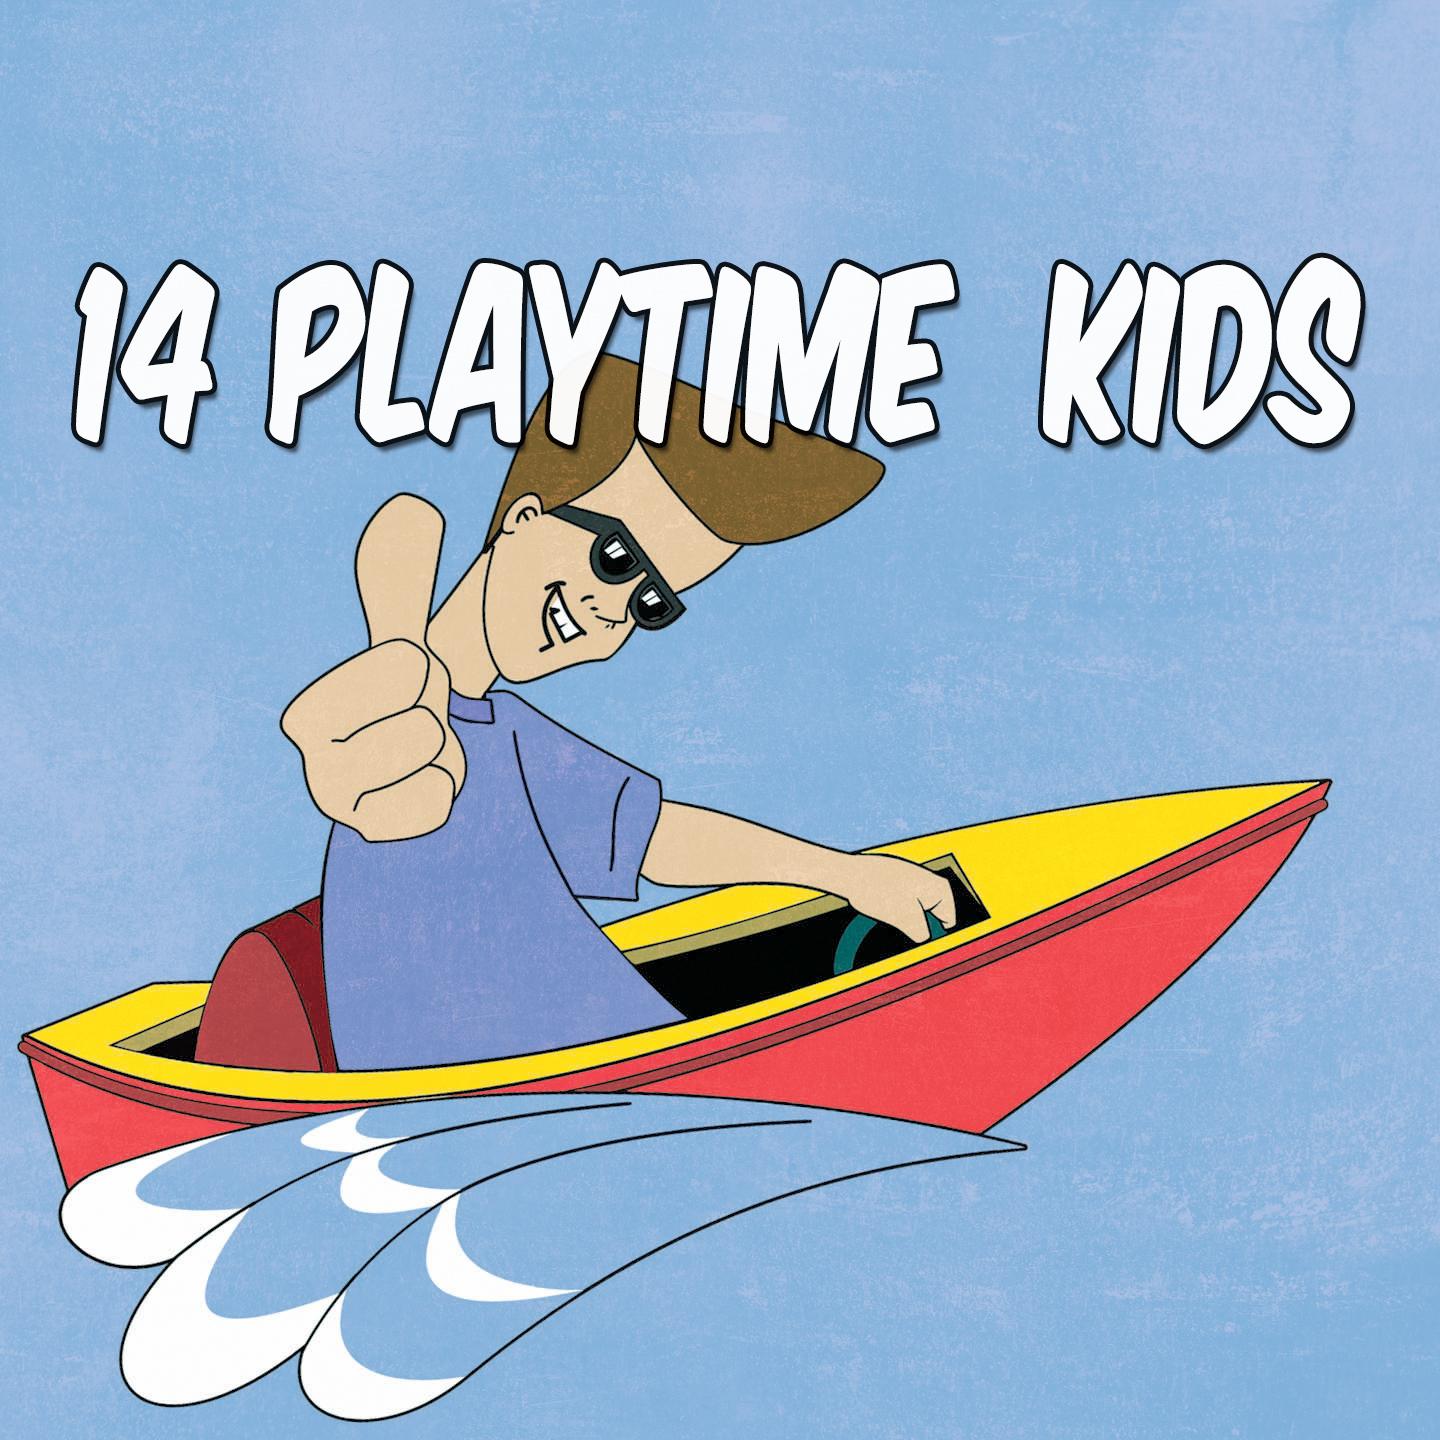 14 Playtime Kids